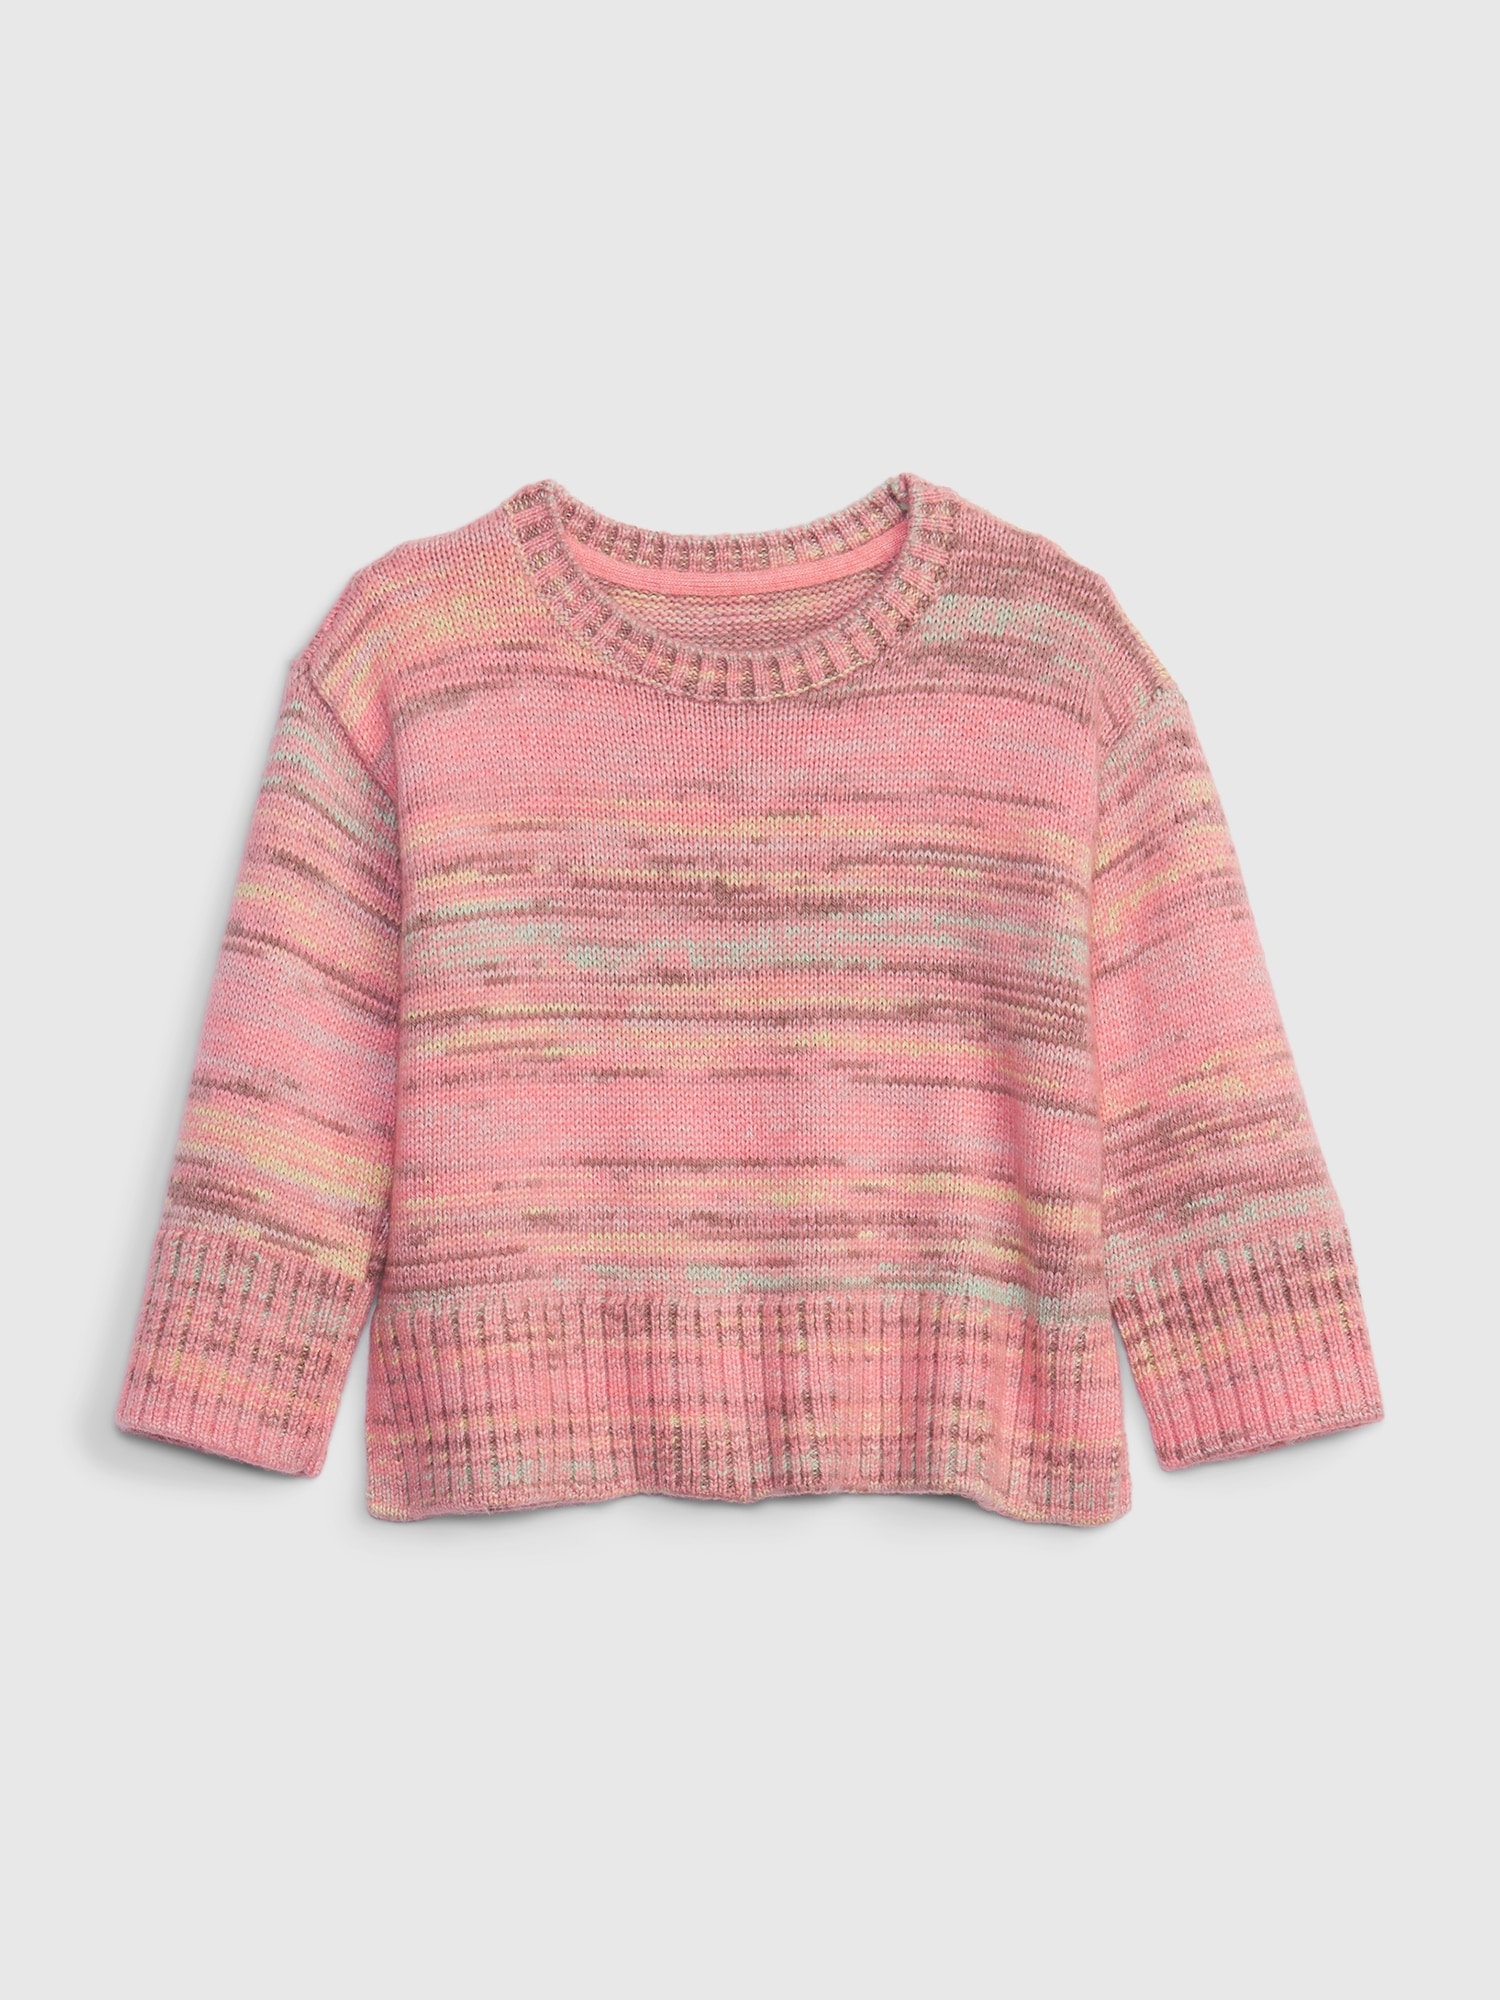 Gap Toddler Marled Sweater pink. 1